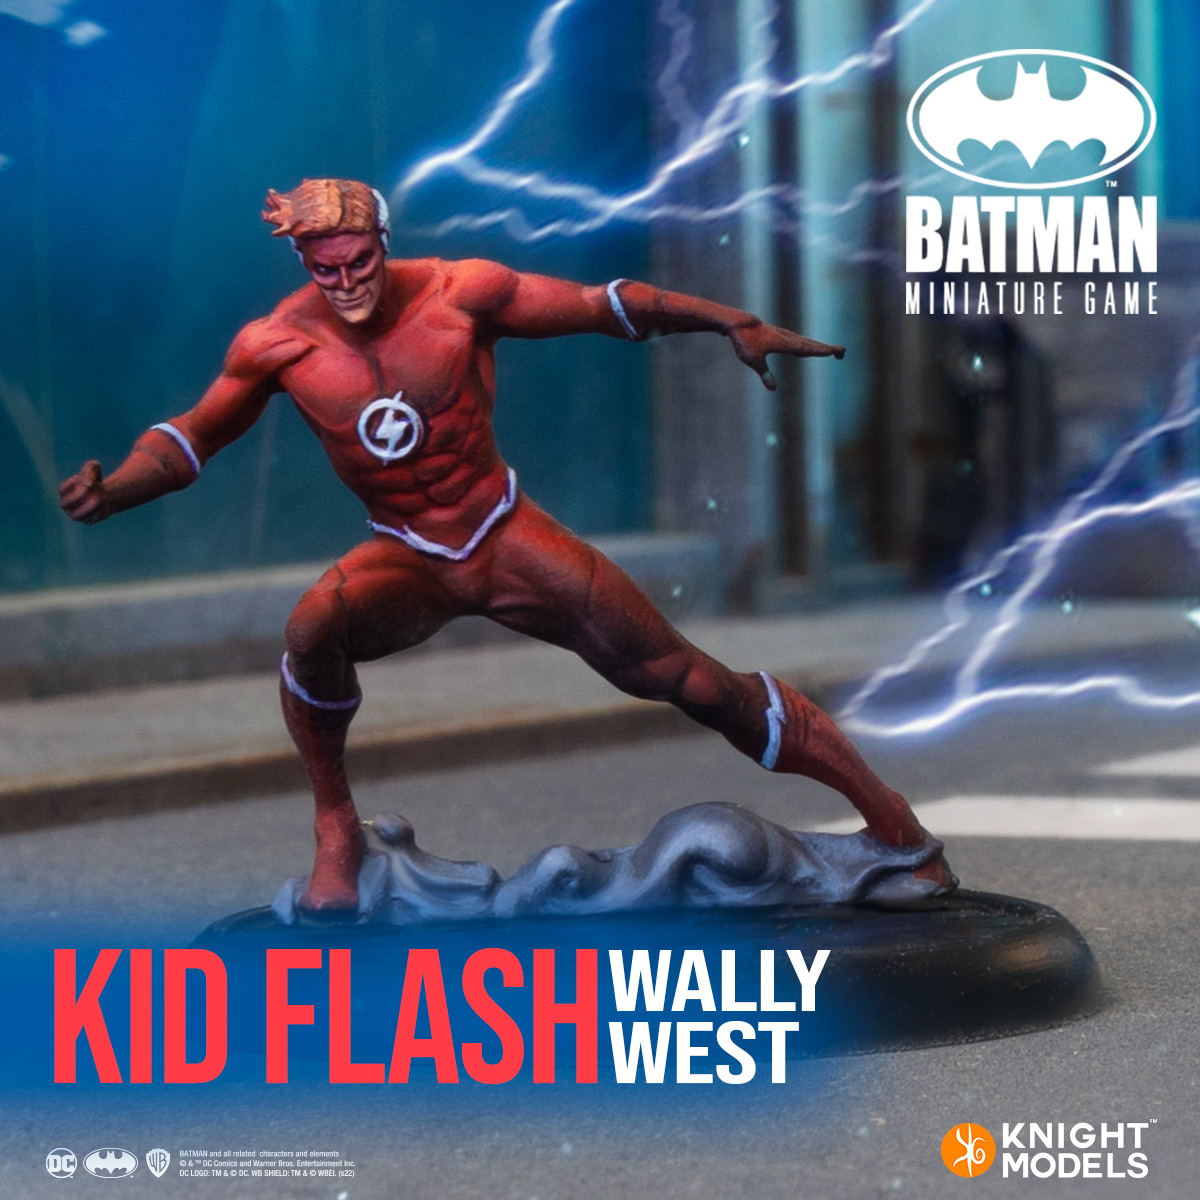 Kid Flash Wally West - Knight Models